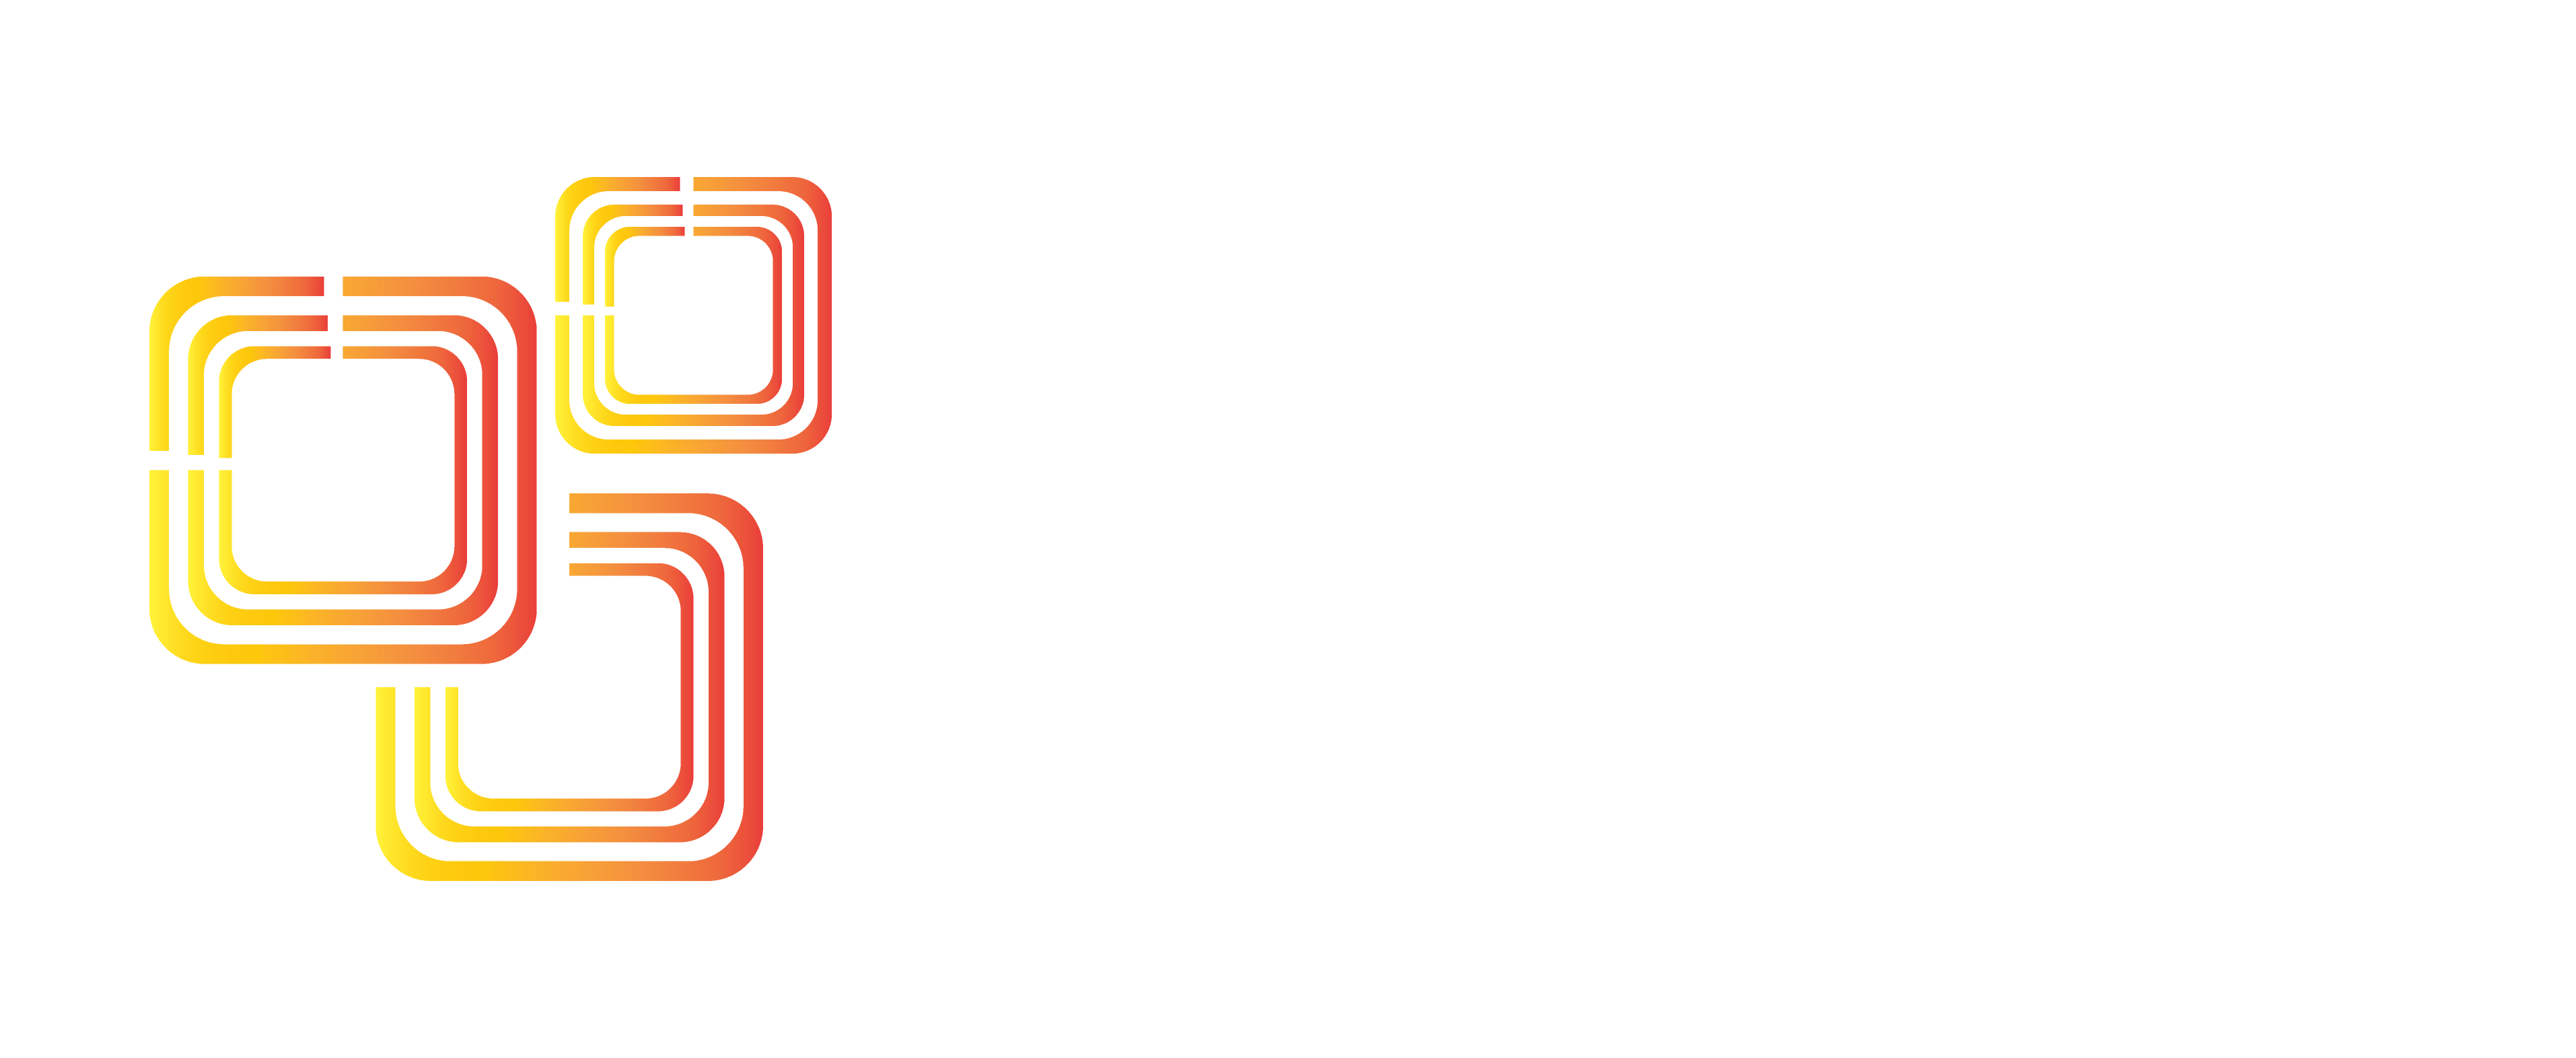 Laptop Chính Hãng – Được trợ giá tốt nhất